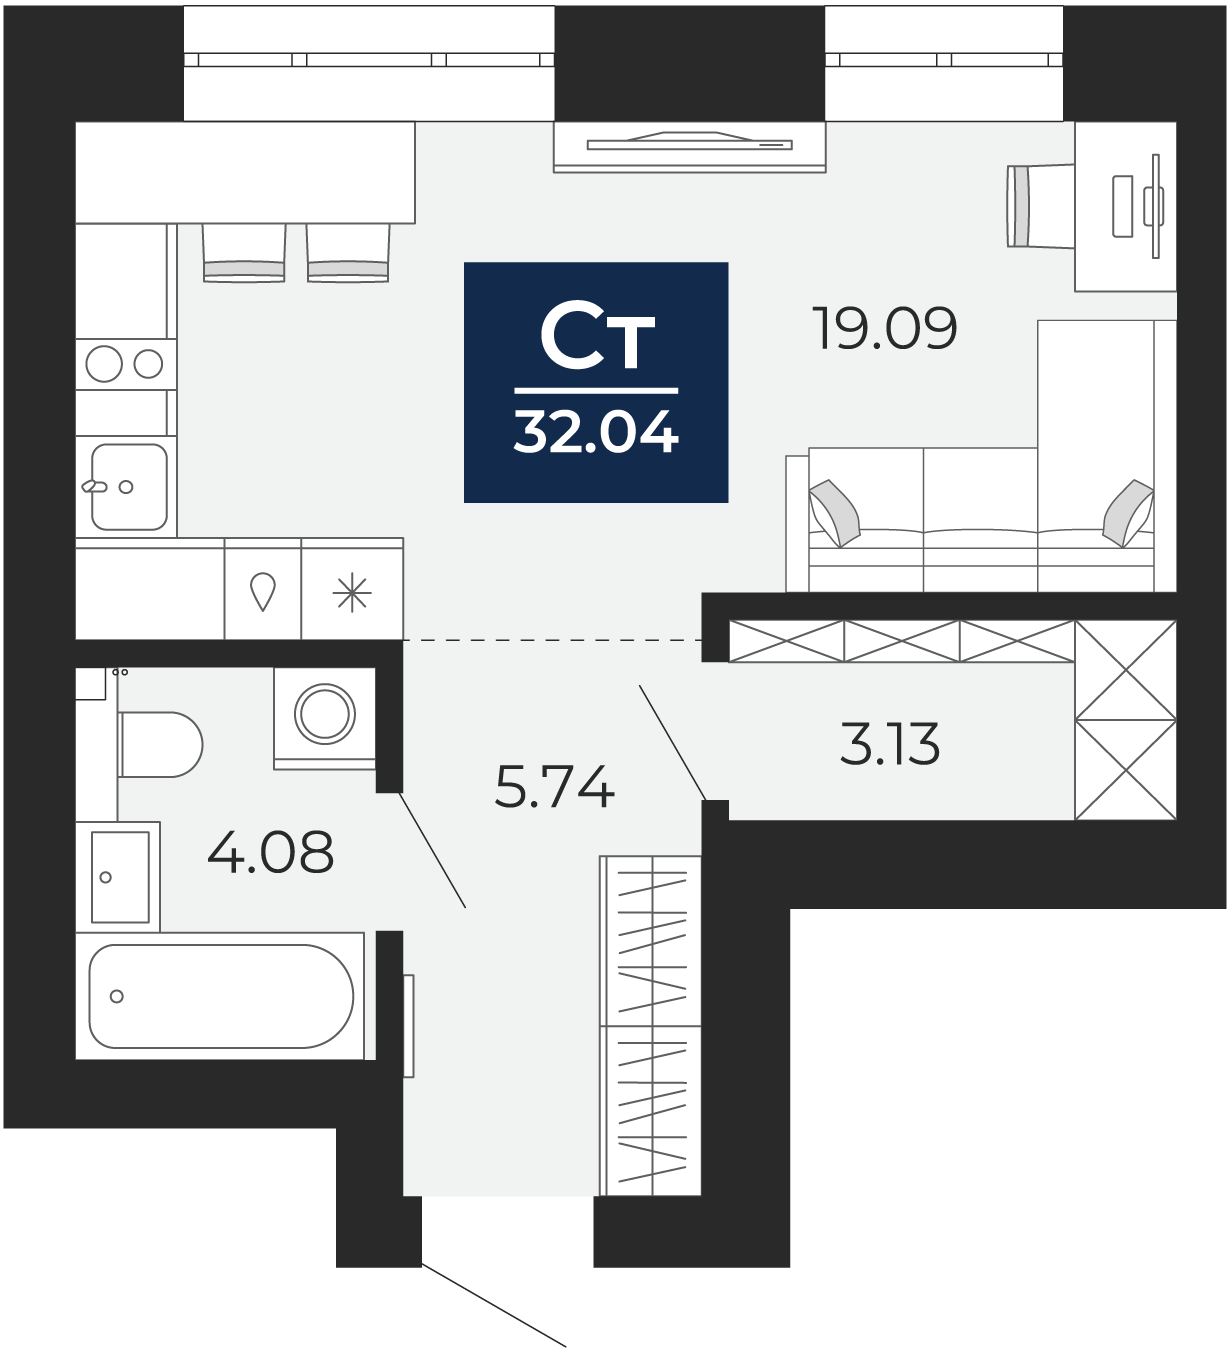 Квартира № 25, Студия, 32.04 кв. м, 5 этаж